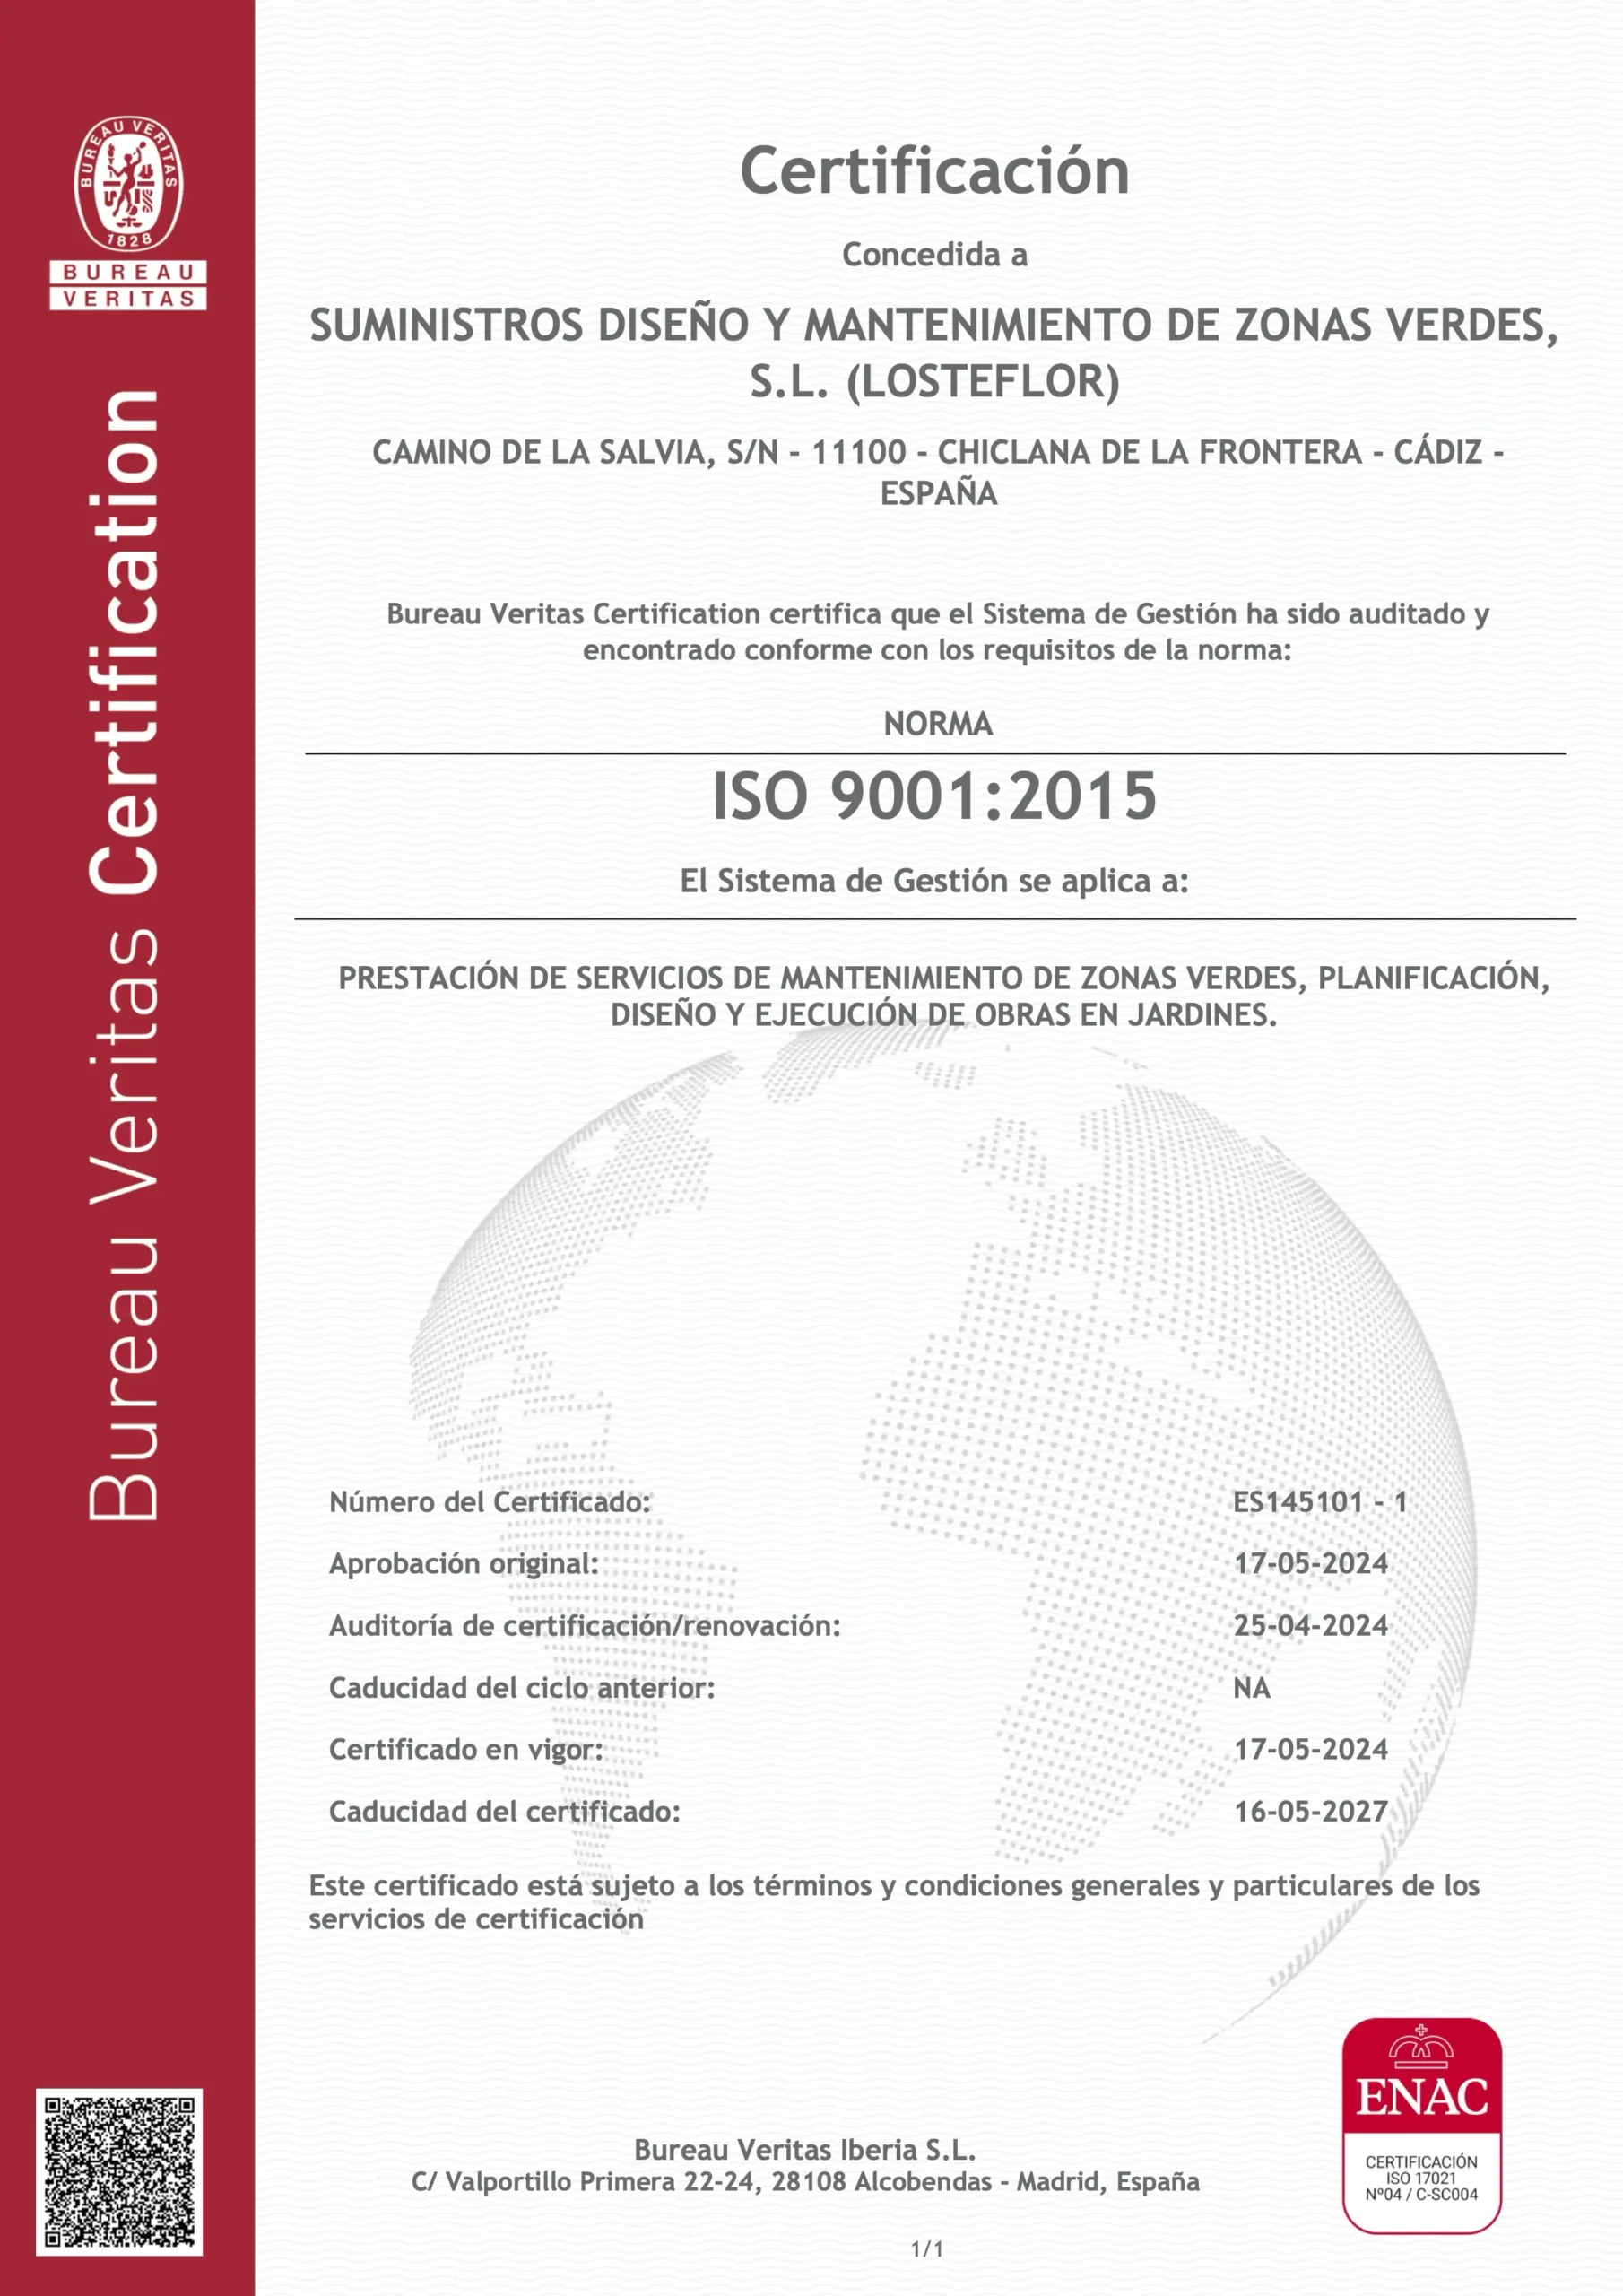 Losteflor: Certificación ISO 9001:2015 de Bureau Veritas